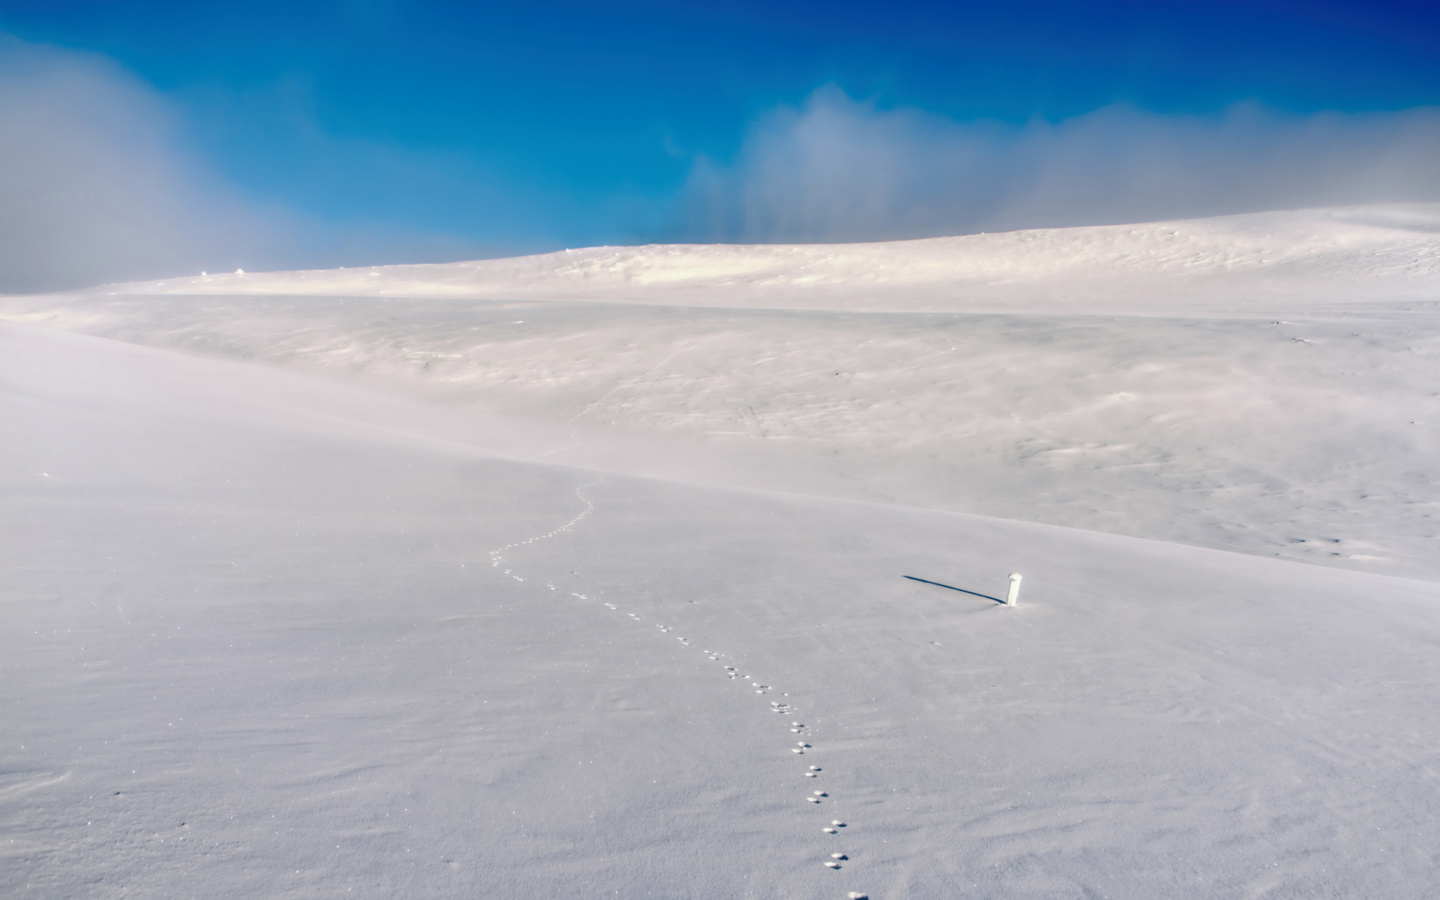 Footprints on snow field screenshot #1 1440x900